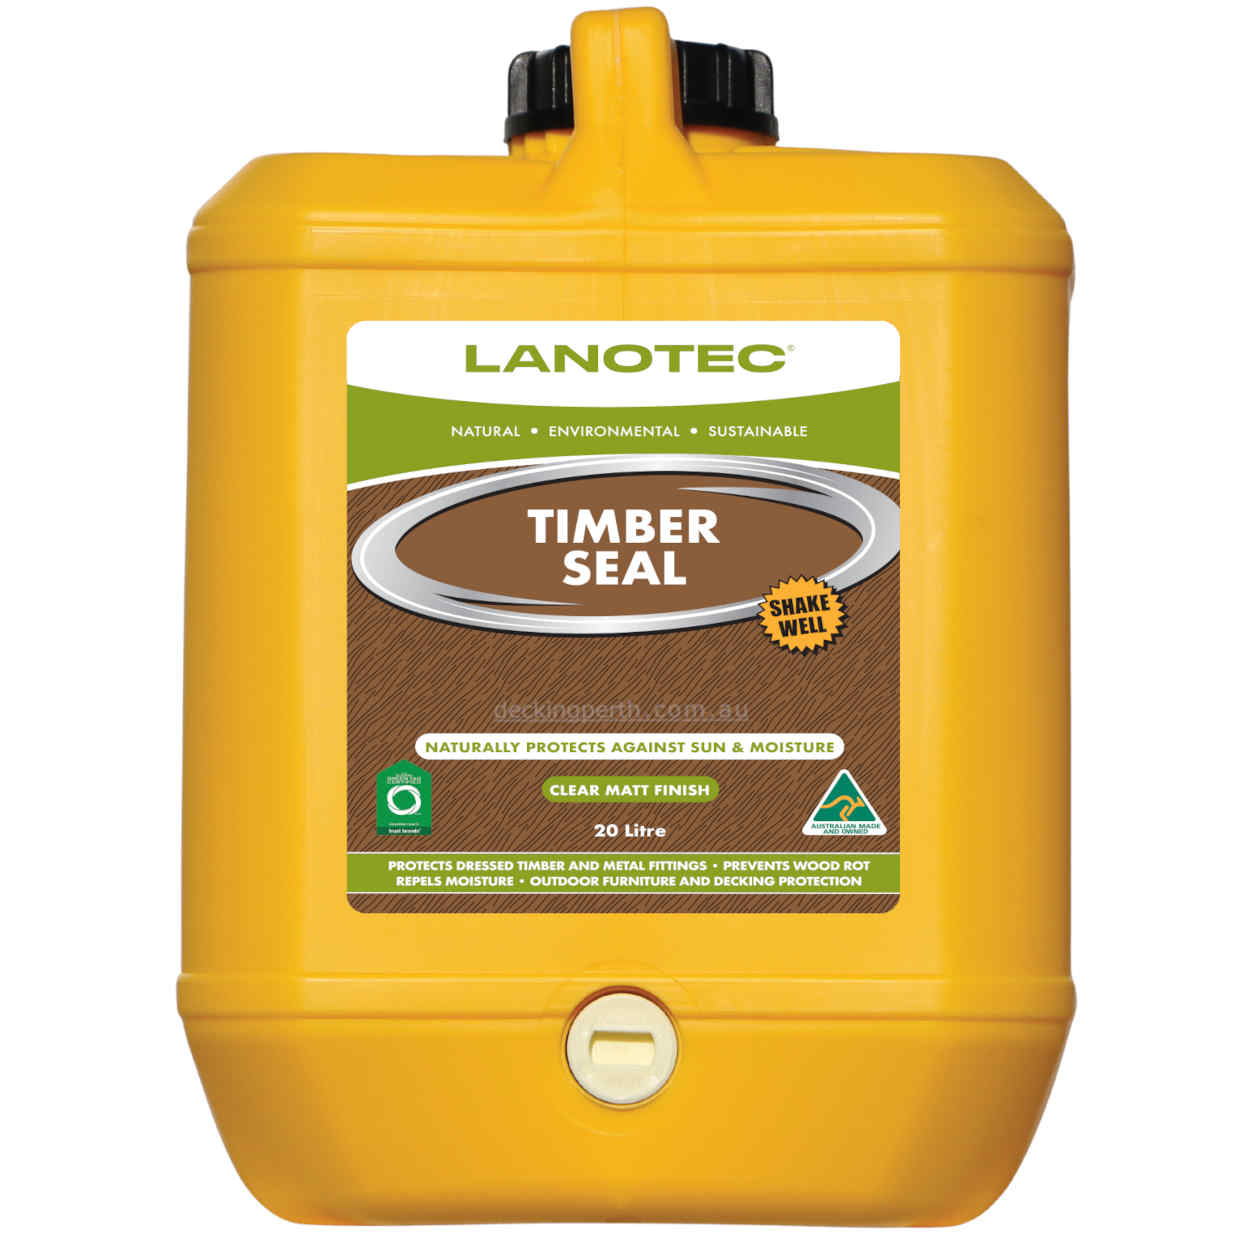 LANOTEC - Timber Seal